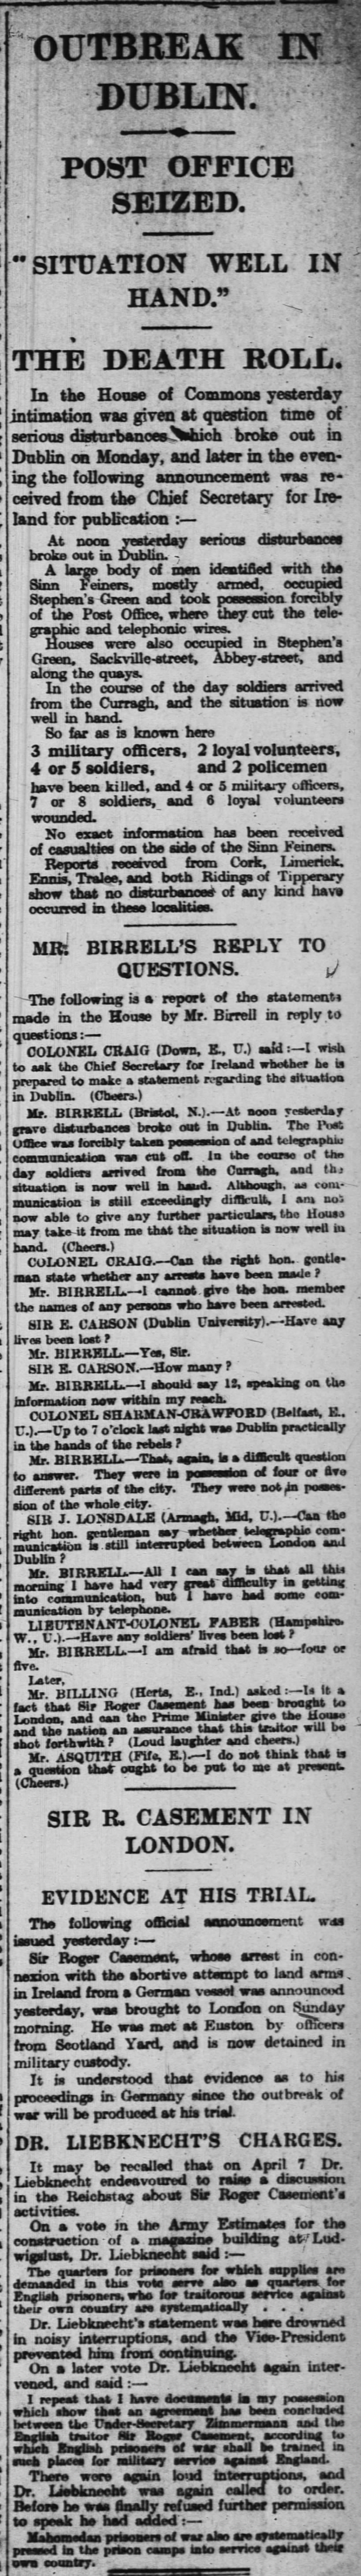 Irish Rising 1 London Times 1916